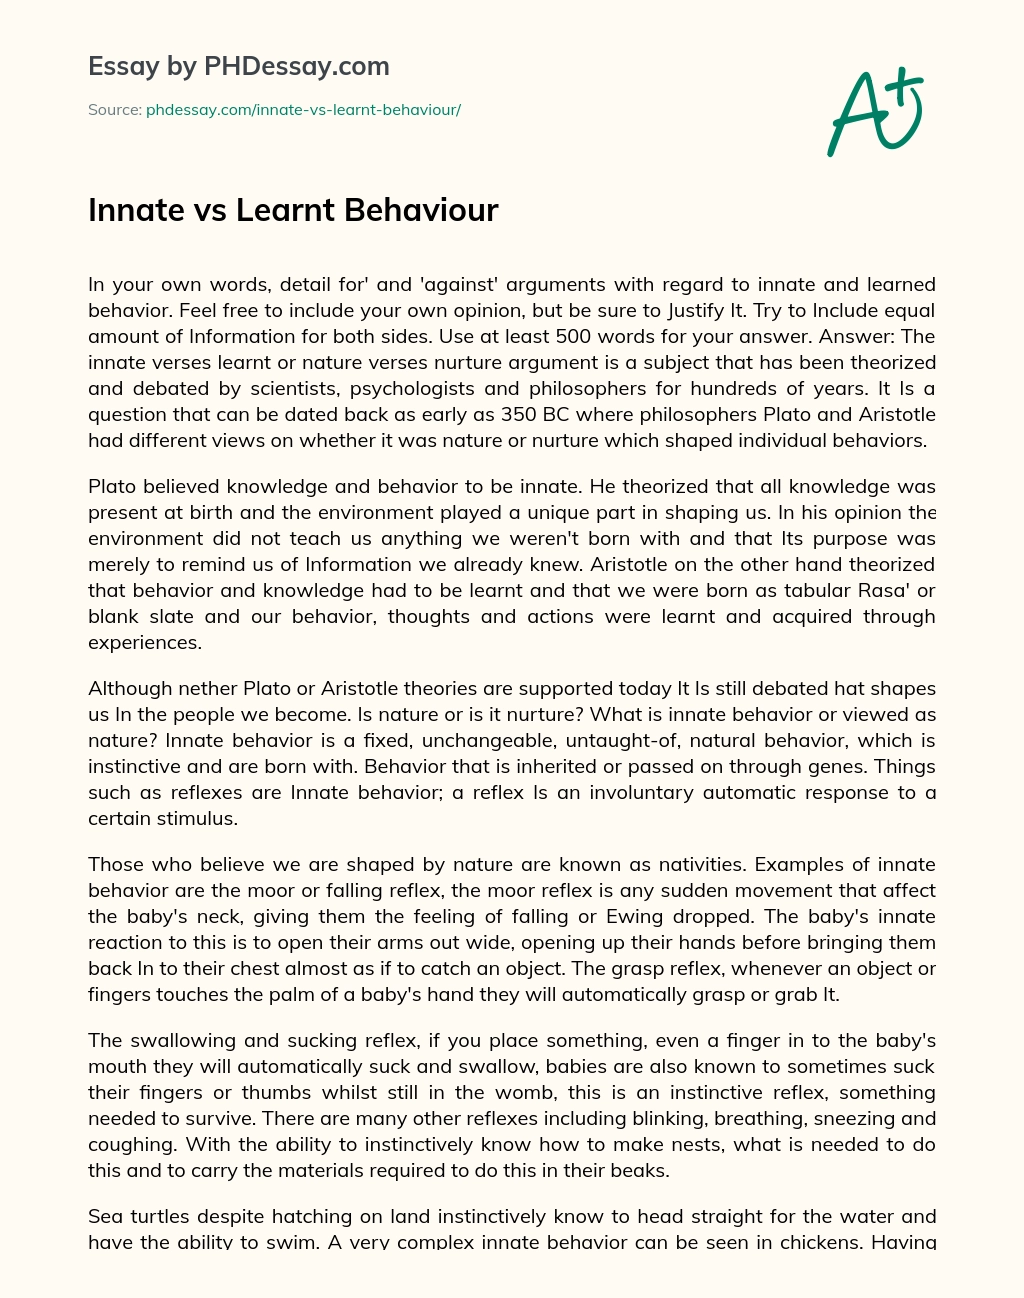 Innate vs Learnt Behaviour essay